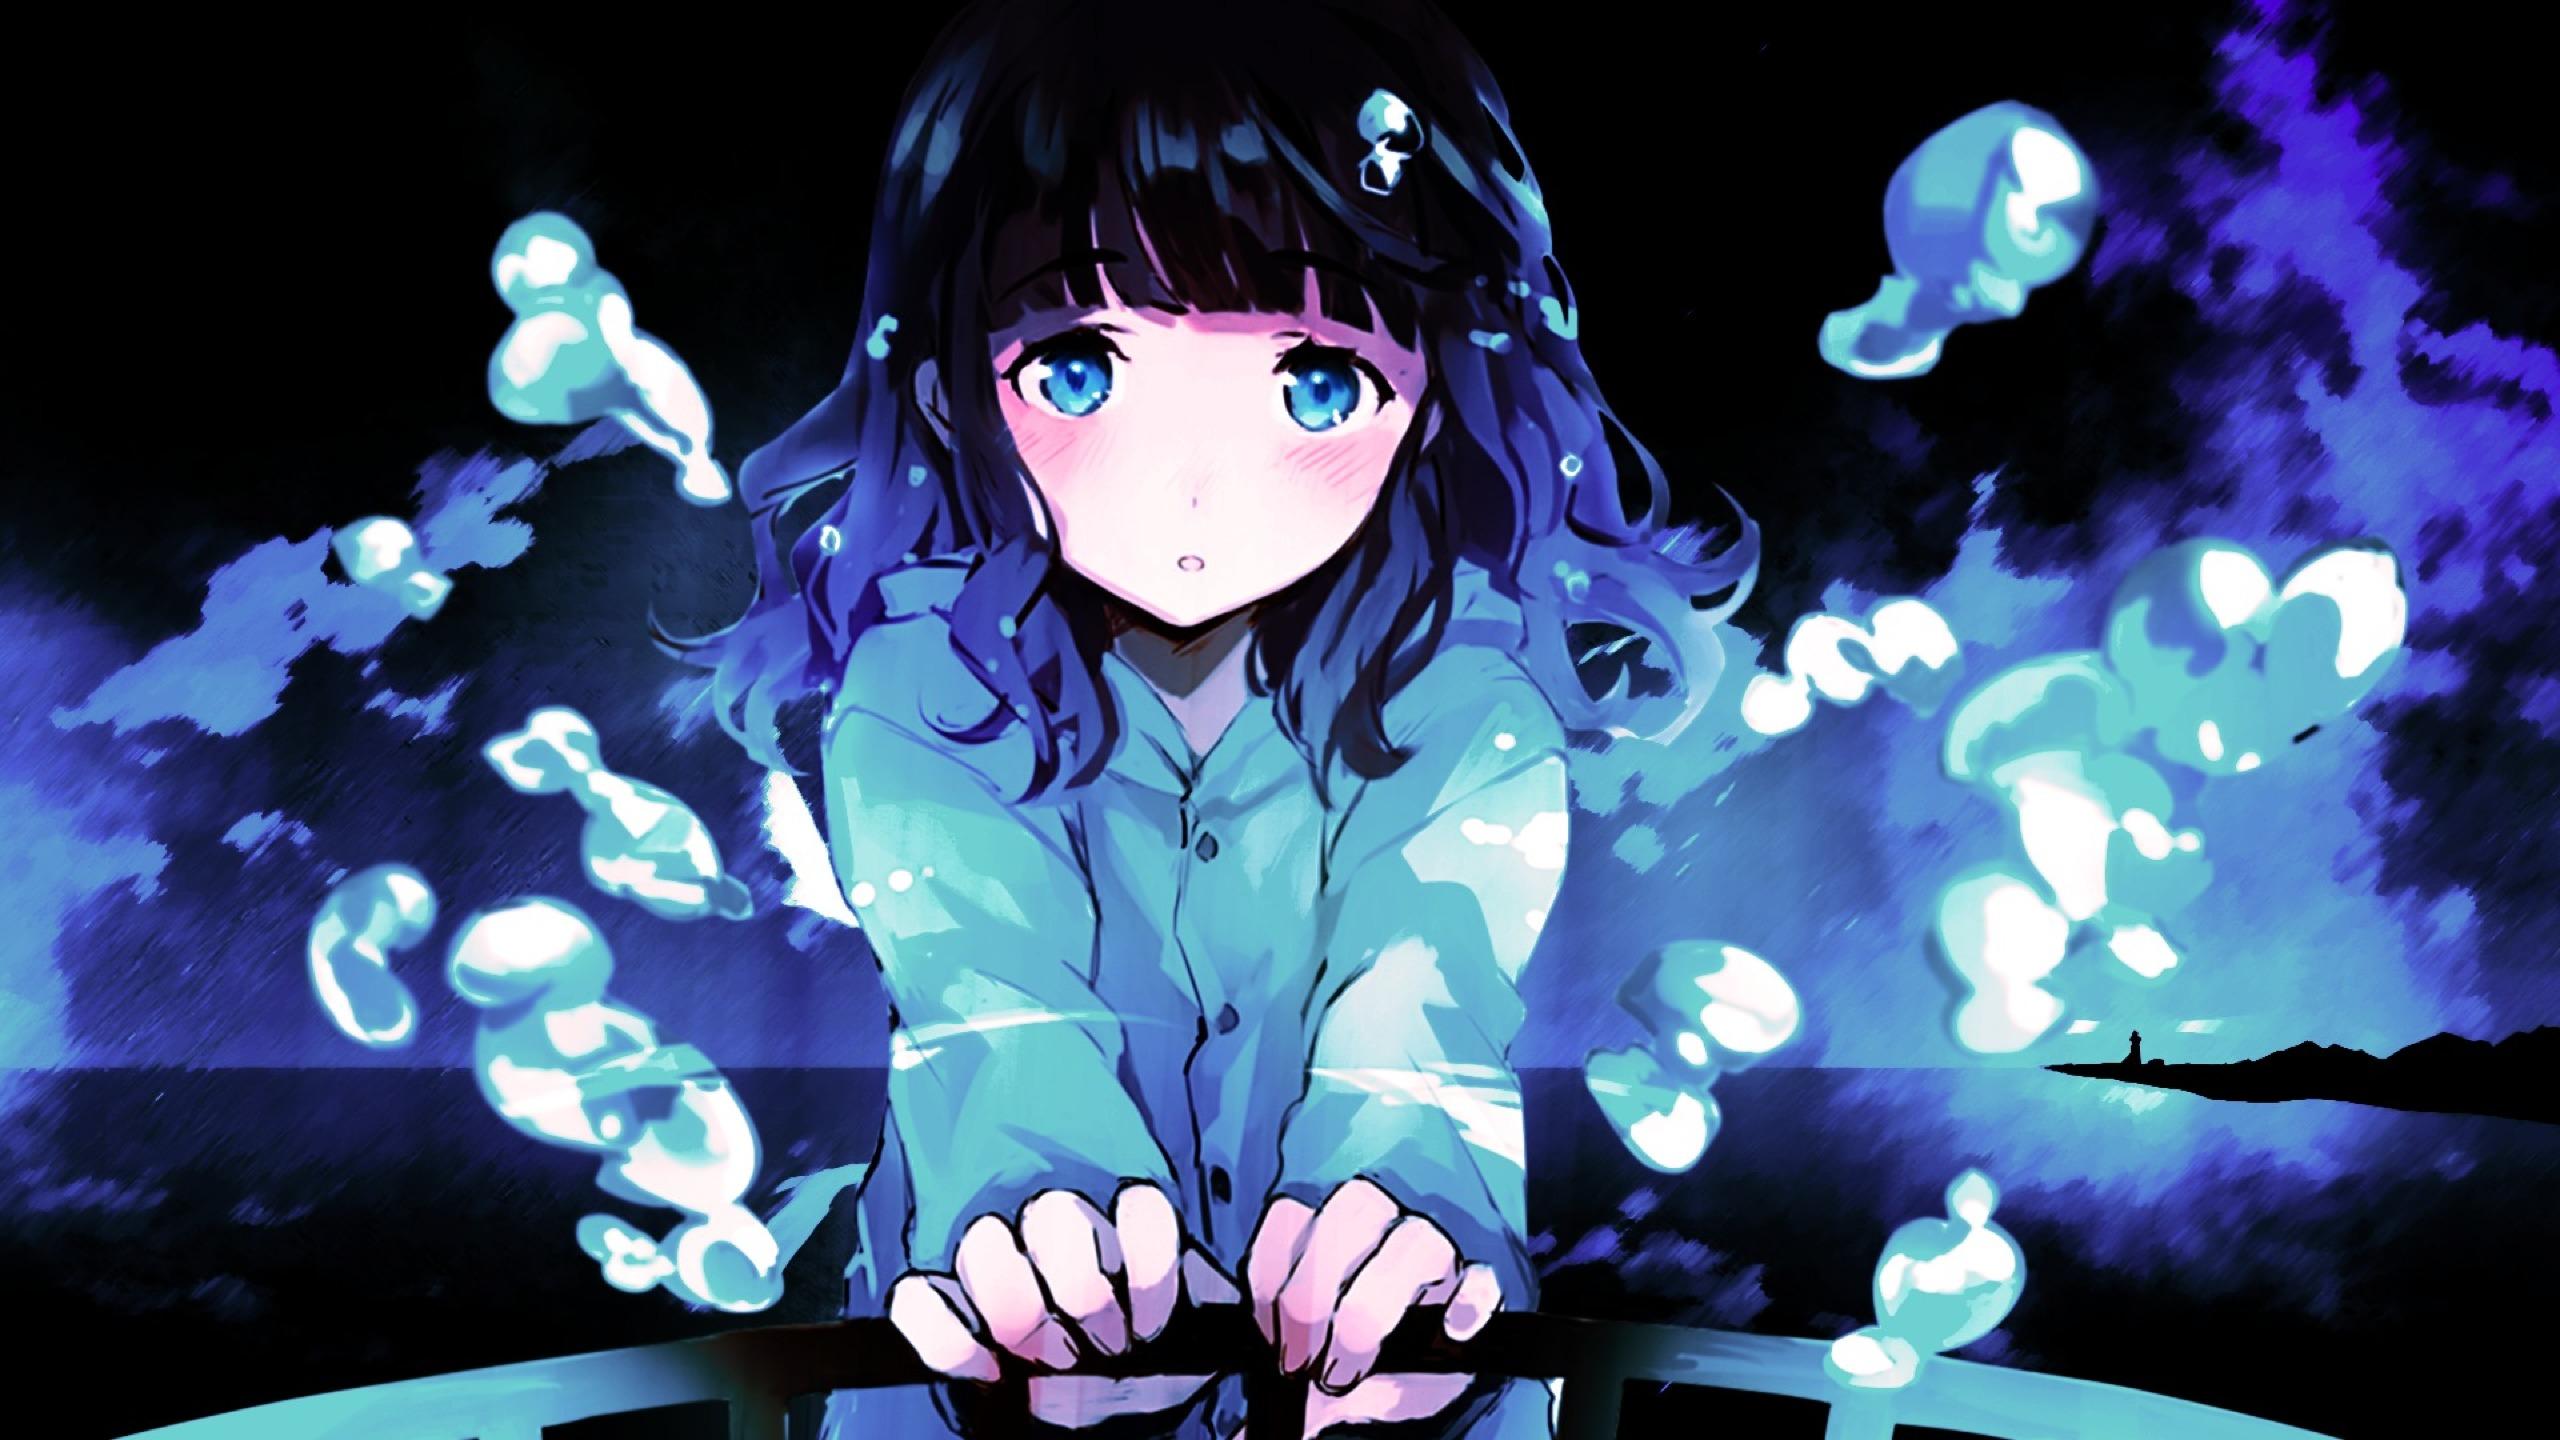 2560x1440 Anime Sad Girl 1440P Resolution Wallpaper, HD Anime 4K